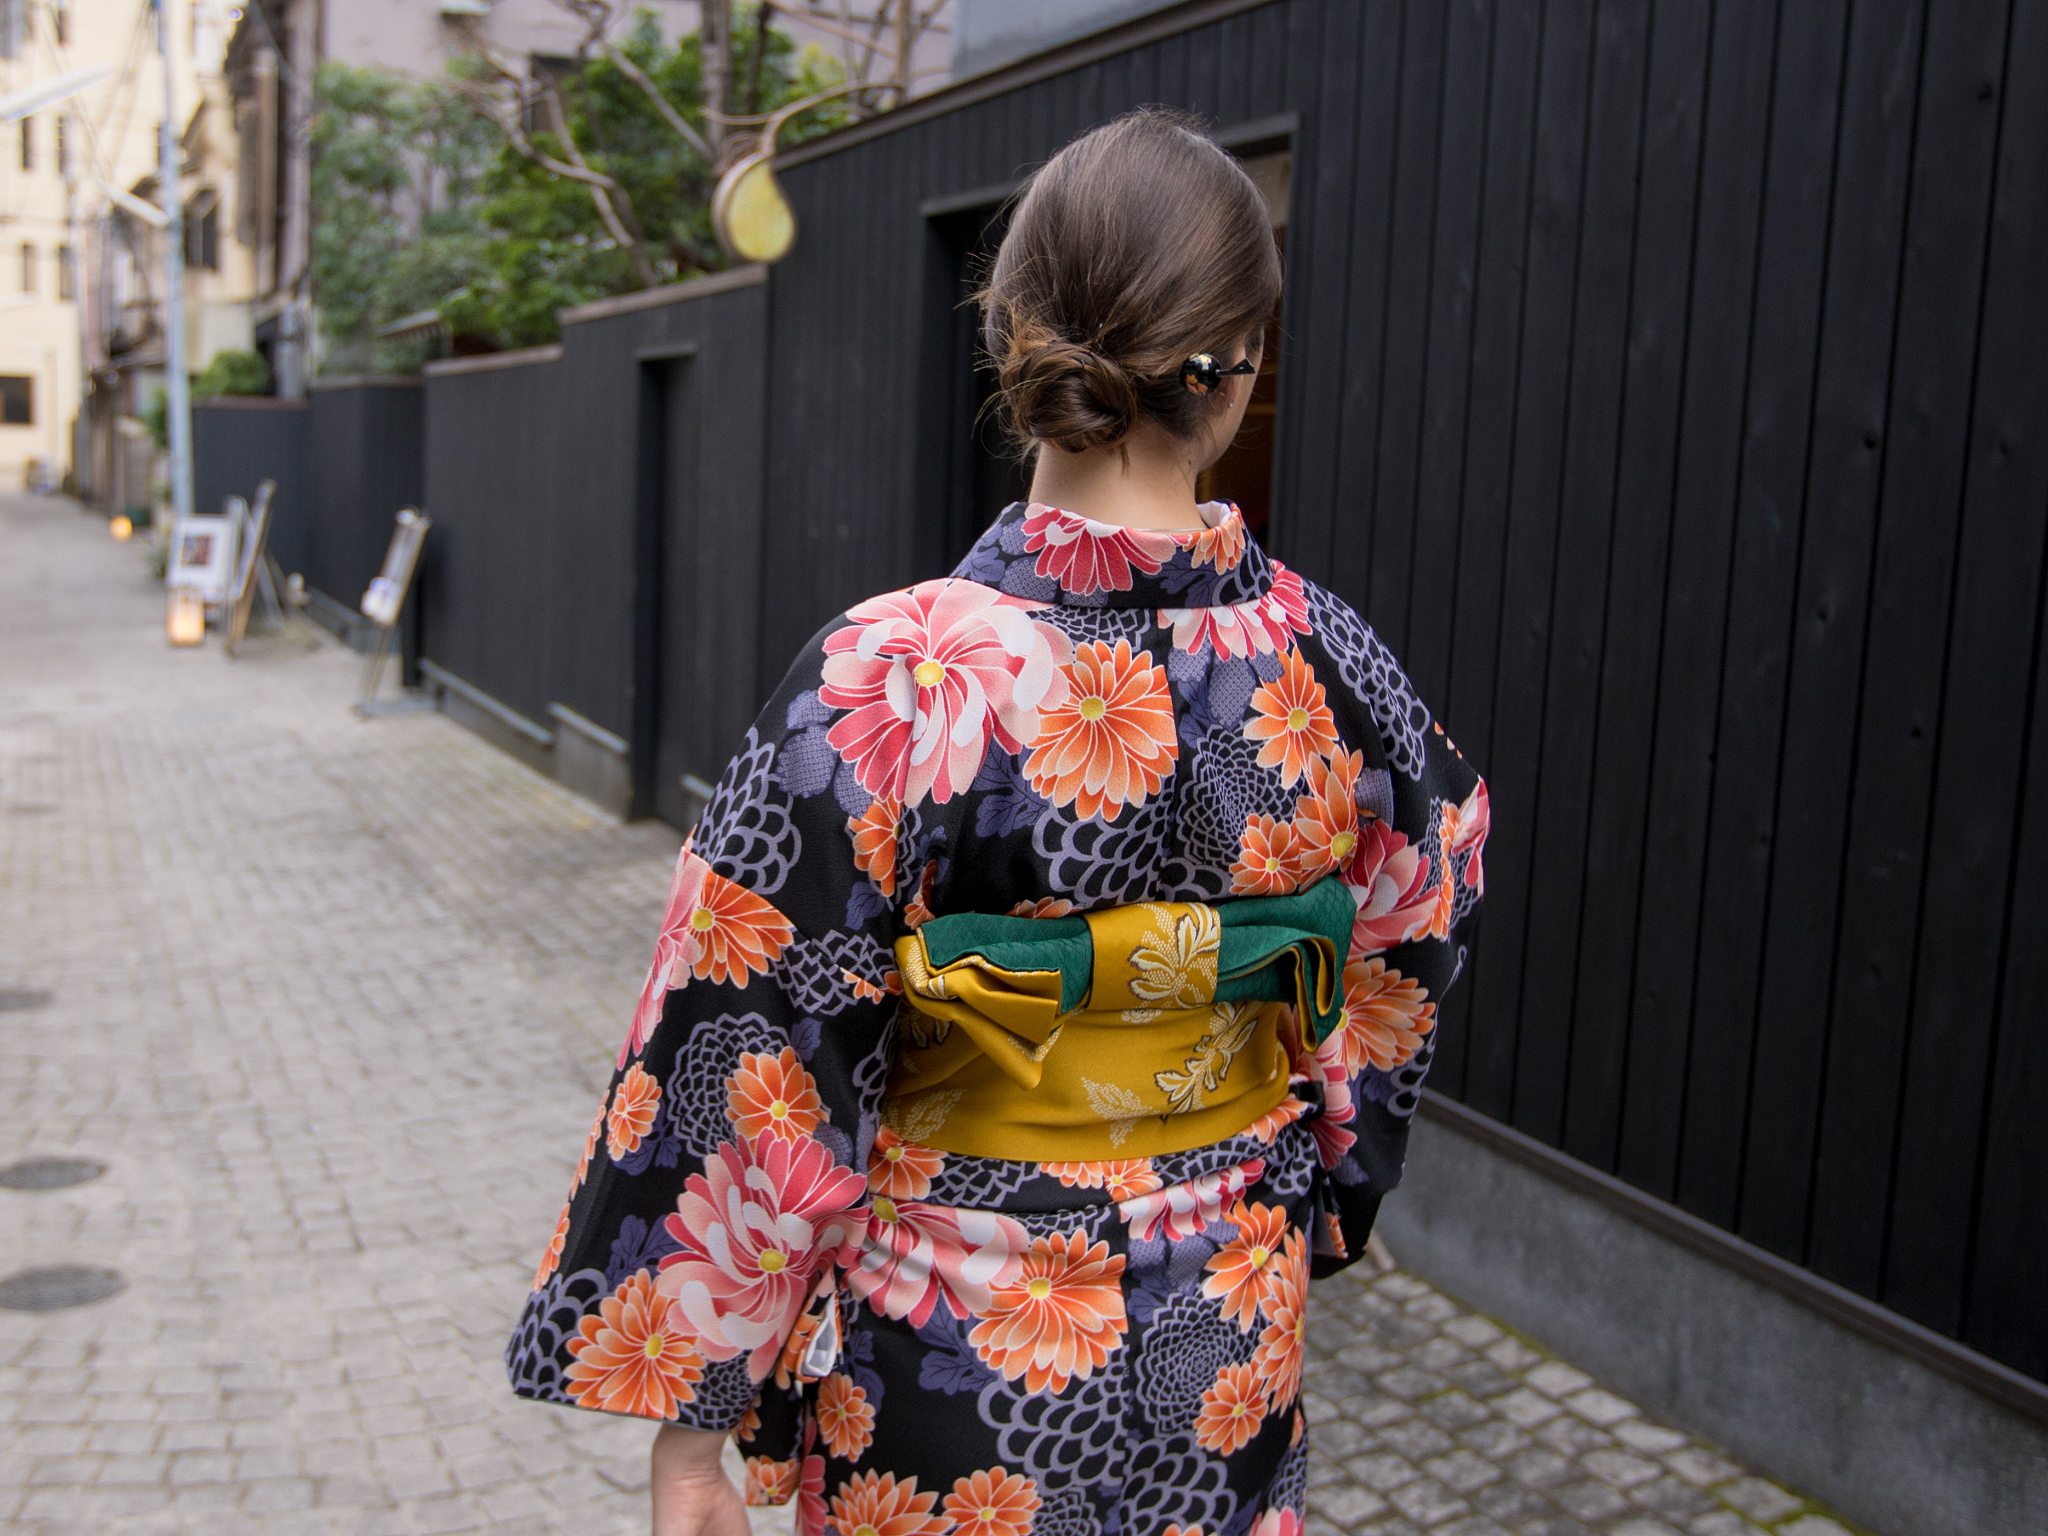 日本女性和服背后的包是用来干啥?导游直言:男士千万别碰